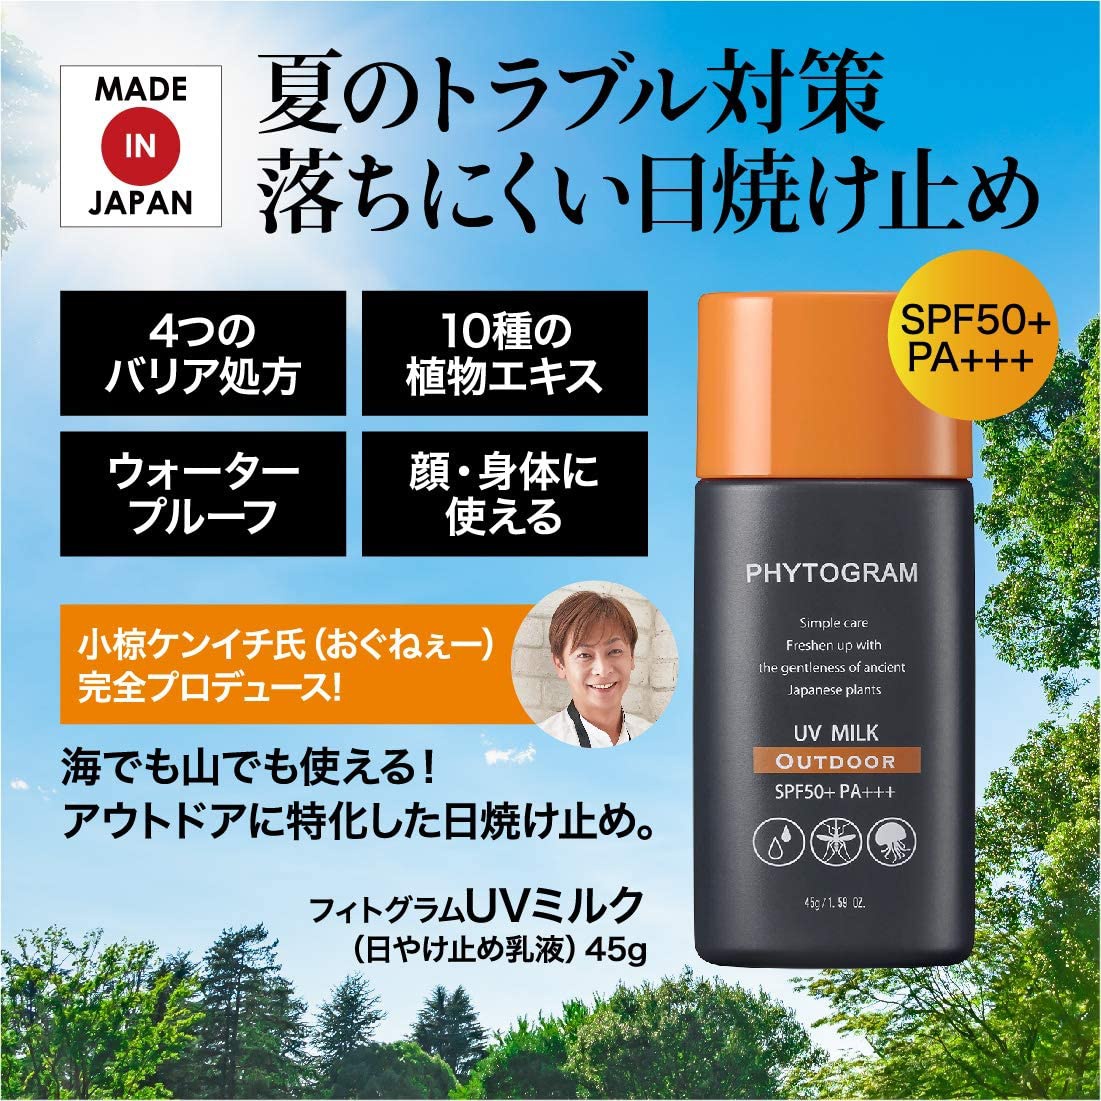 メイコー化粧品(MEIKO) フィトグラム UVミルクの商品画像2 